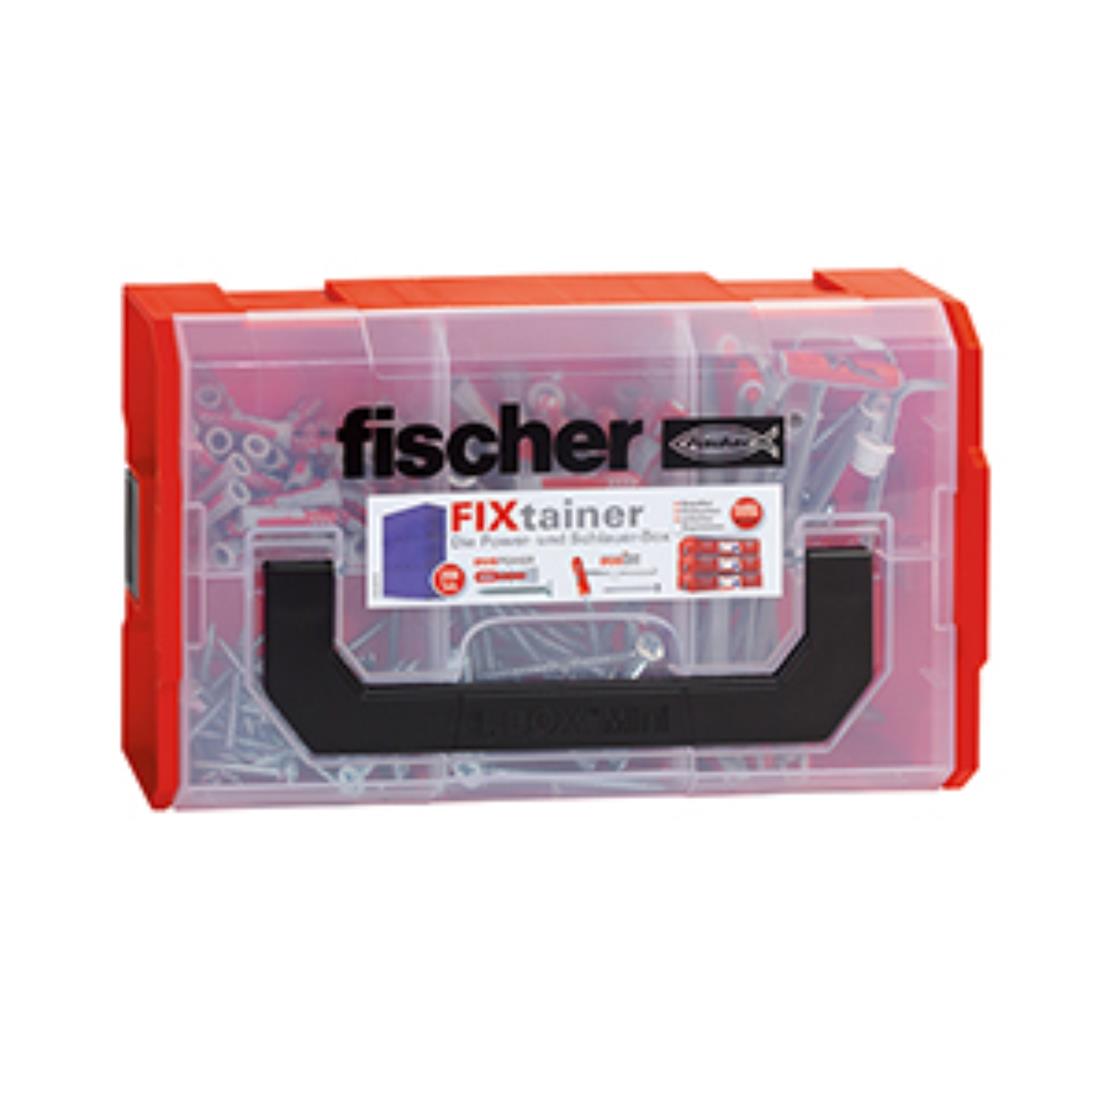 Fischer FIXtainer - DUOPOWER/DUOTEC+Schr. (200)